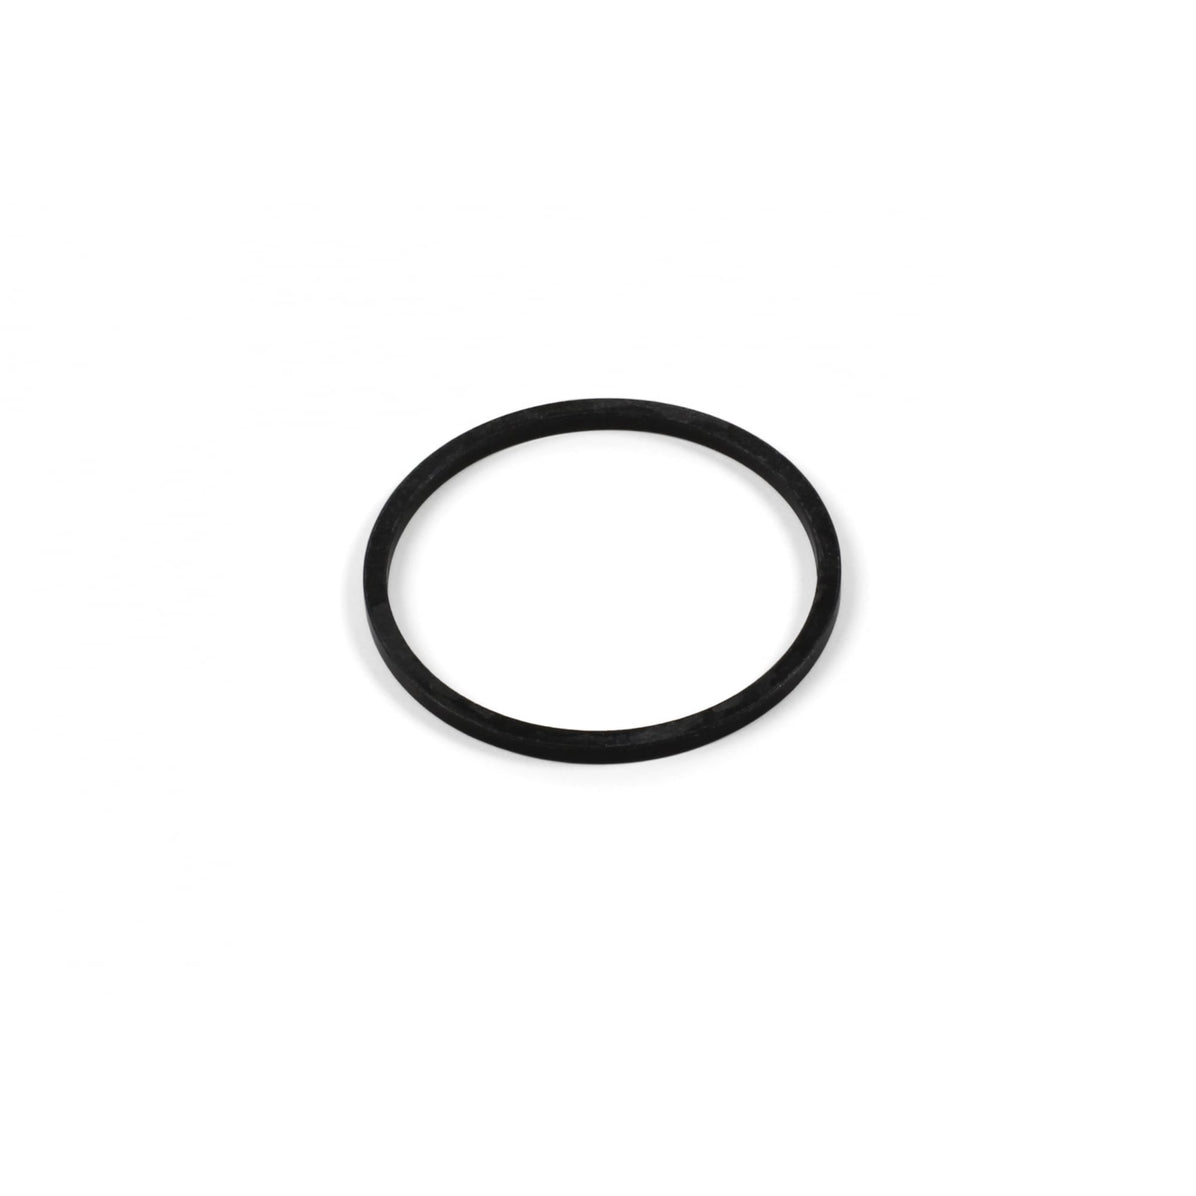 Hope Shimano 10/11 Speed Spacer Ring - Black